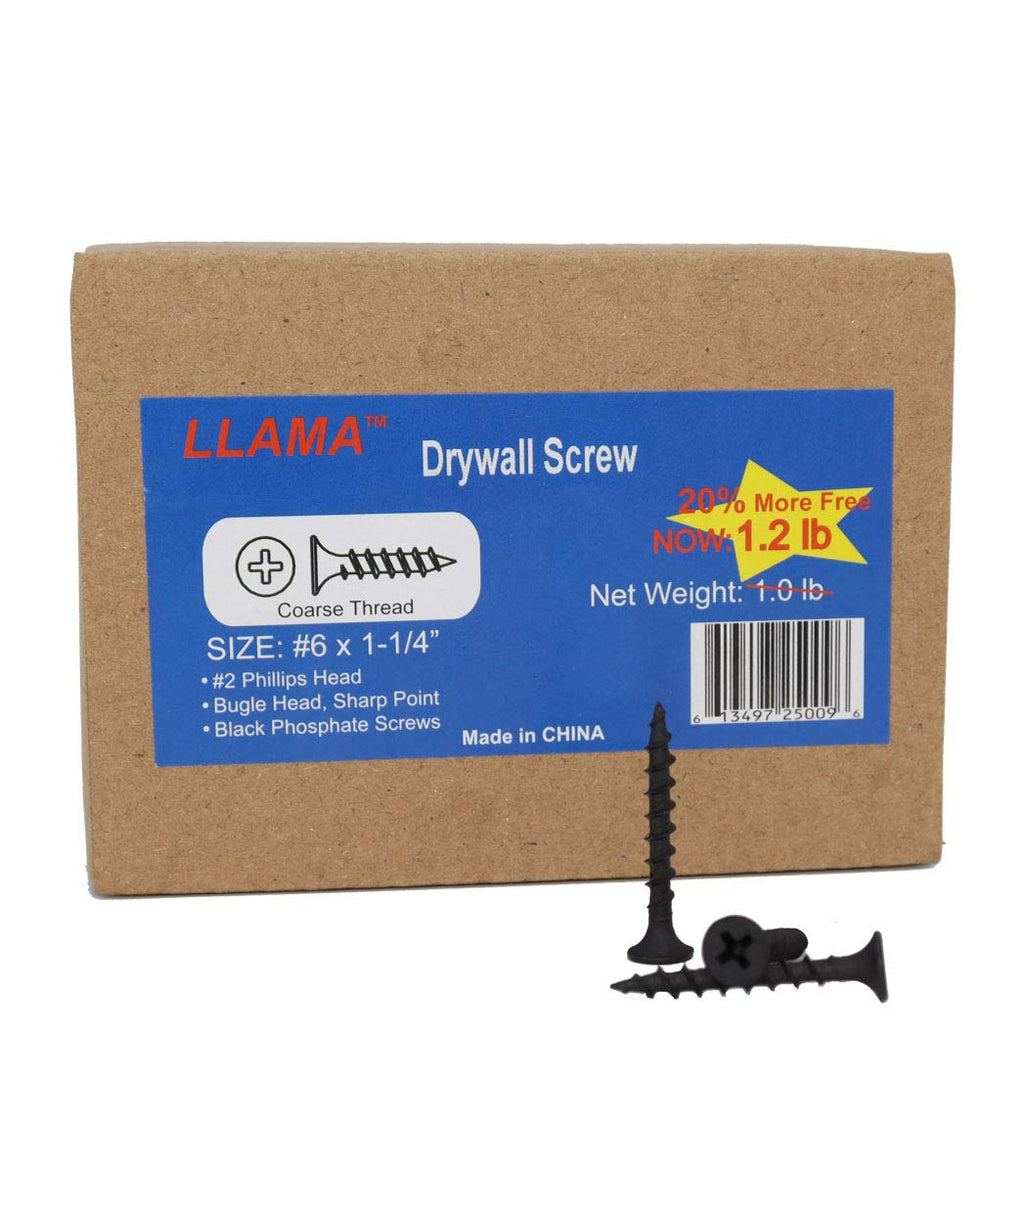 [Australia - AusPower] - LLAMA Fastener Drywall Screws #6x1-1/4” - Coarse Threaded Black Phosphate Screws, Pay 1.0LB Now GET 1.2LB #6x1-1/4" 